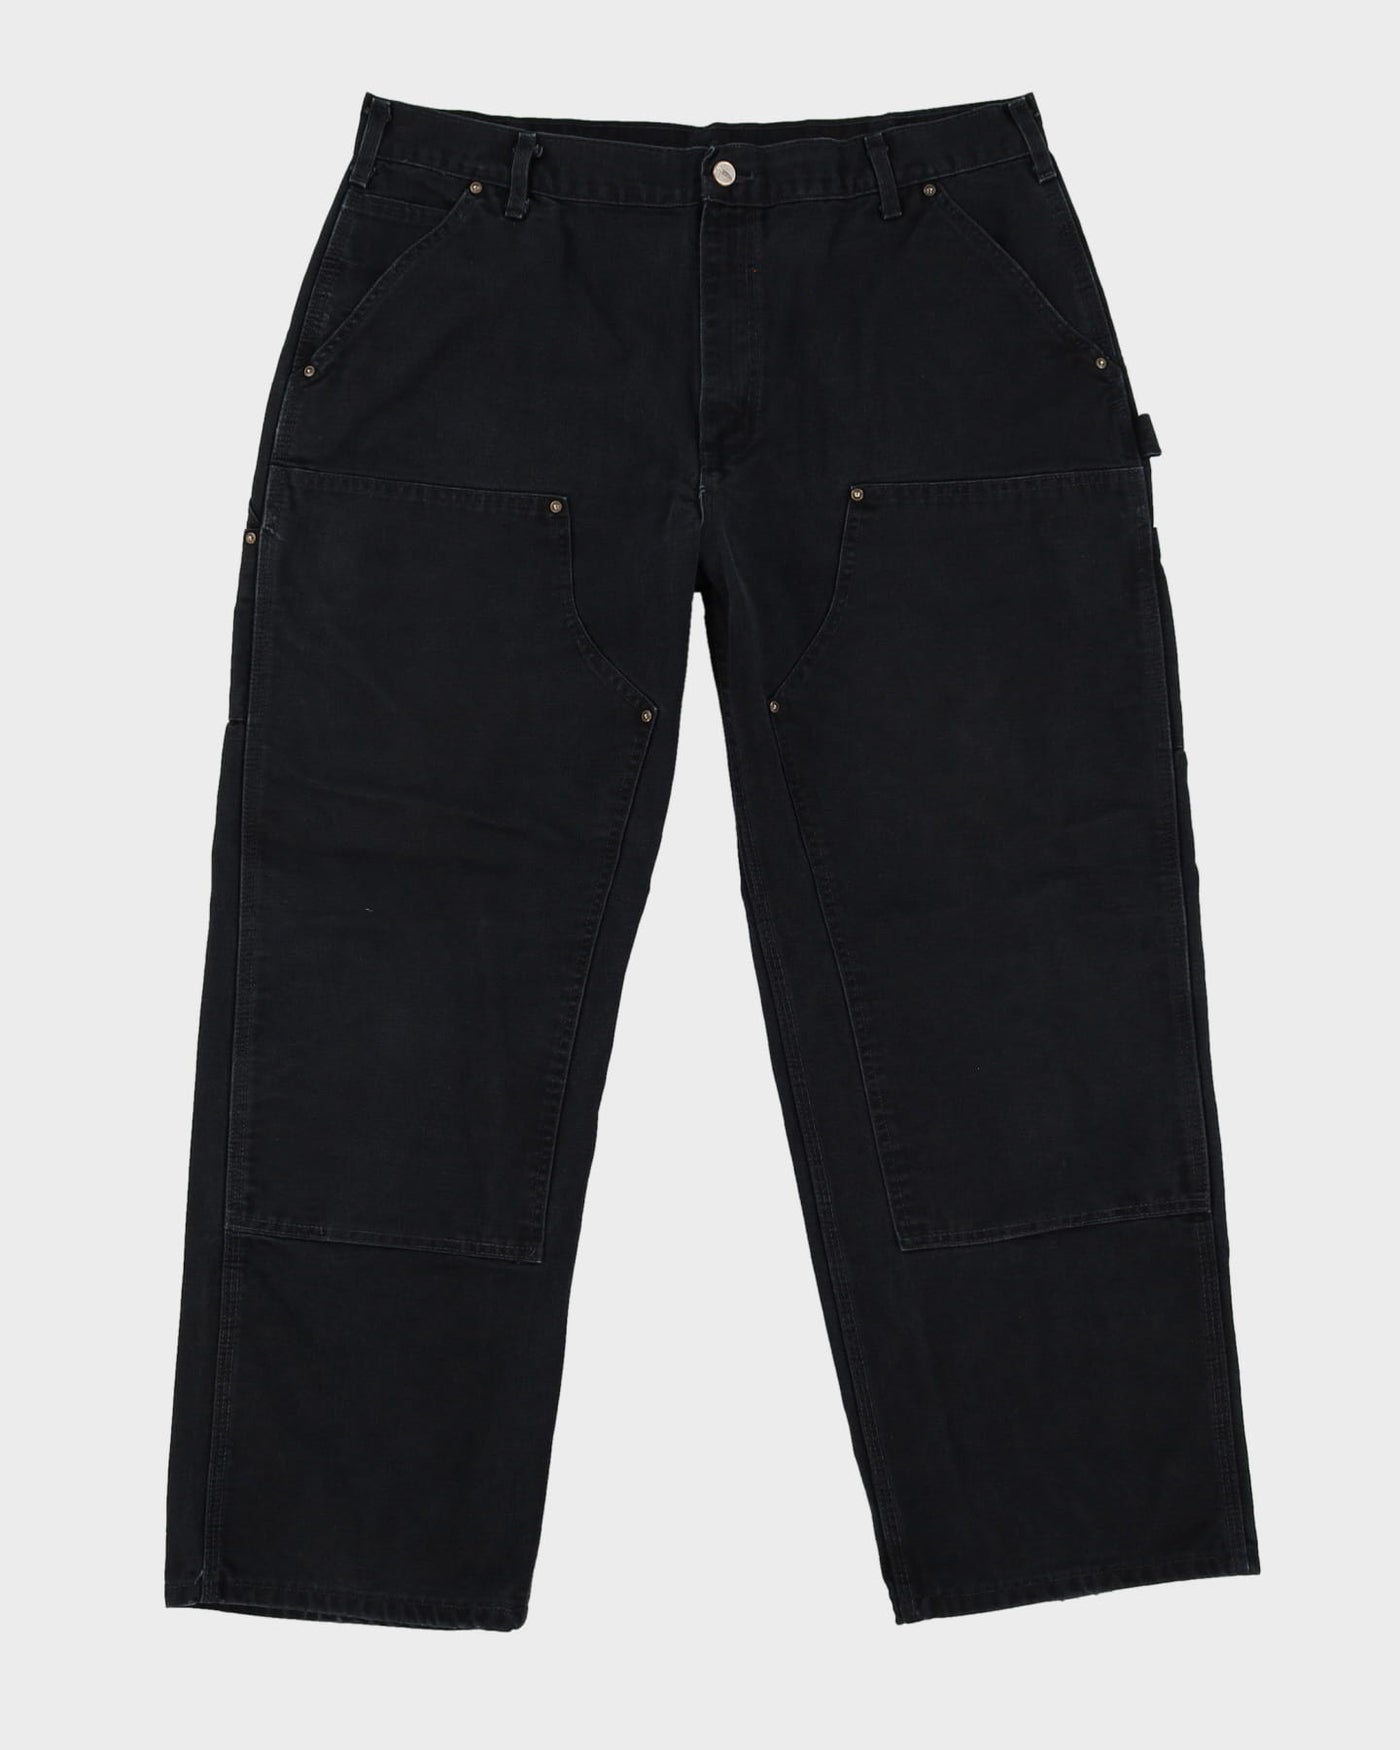 Vintage 90s Carhartt Faded Black Double Knee Workwear Jeans - W37 L29